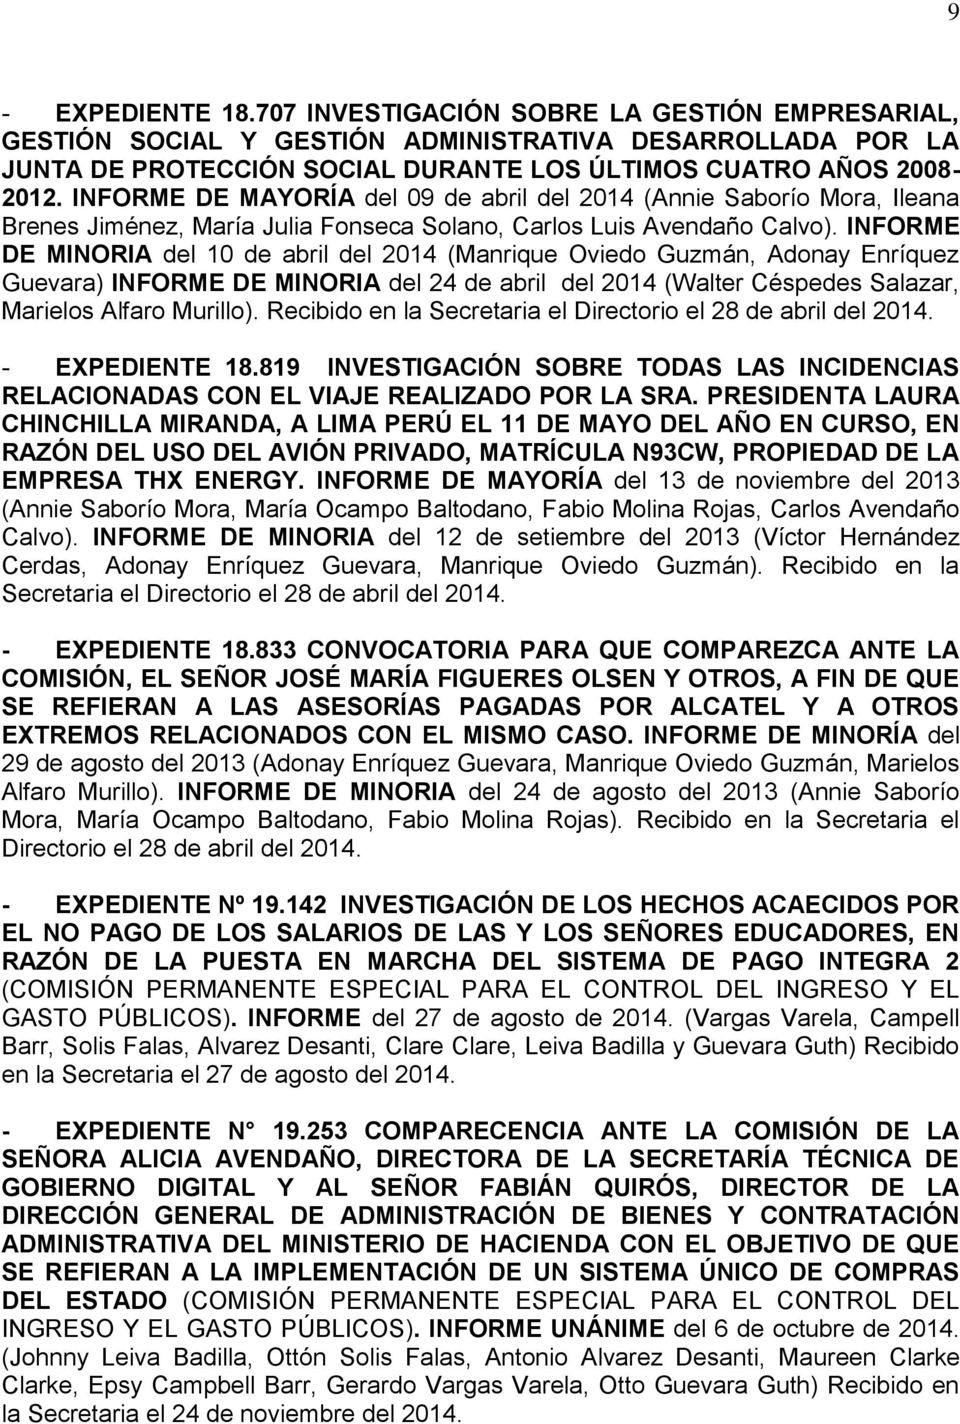 INFORME DE MINORIA del 10 de abril del 2014 (Manrique Oviedo Guzmán, Adonay Enríquez Guevara) INFORME DE MINORIA del 24 de abril del 2014 (Walter Céspedes Salazar, Marielos Alfaro Murillo).